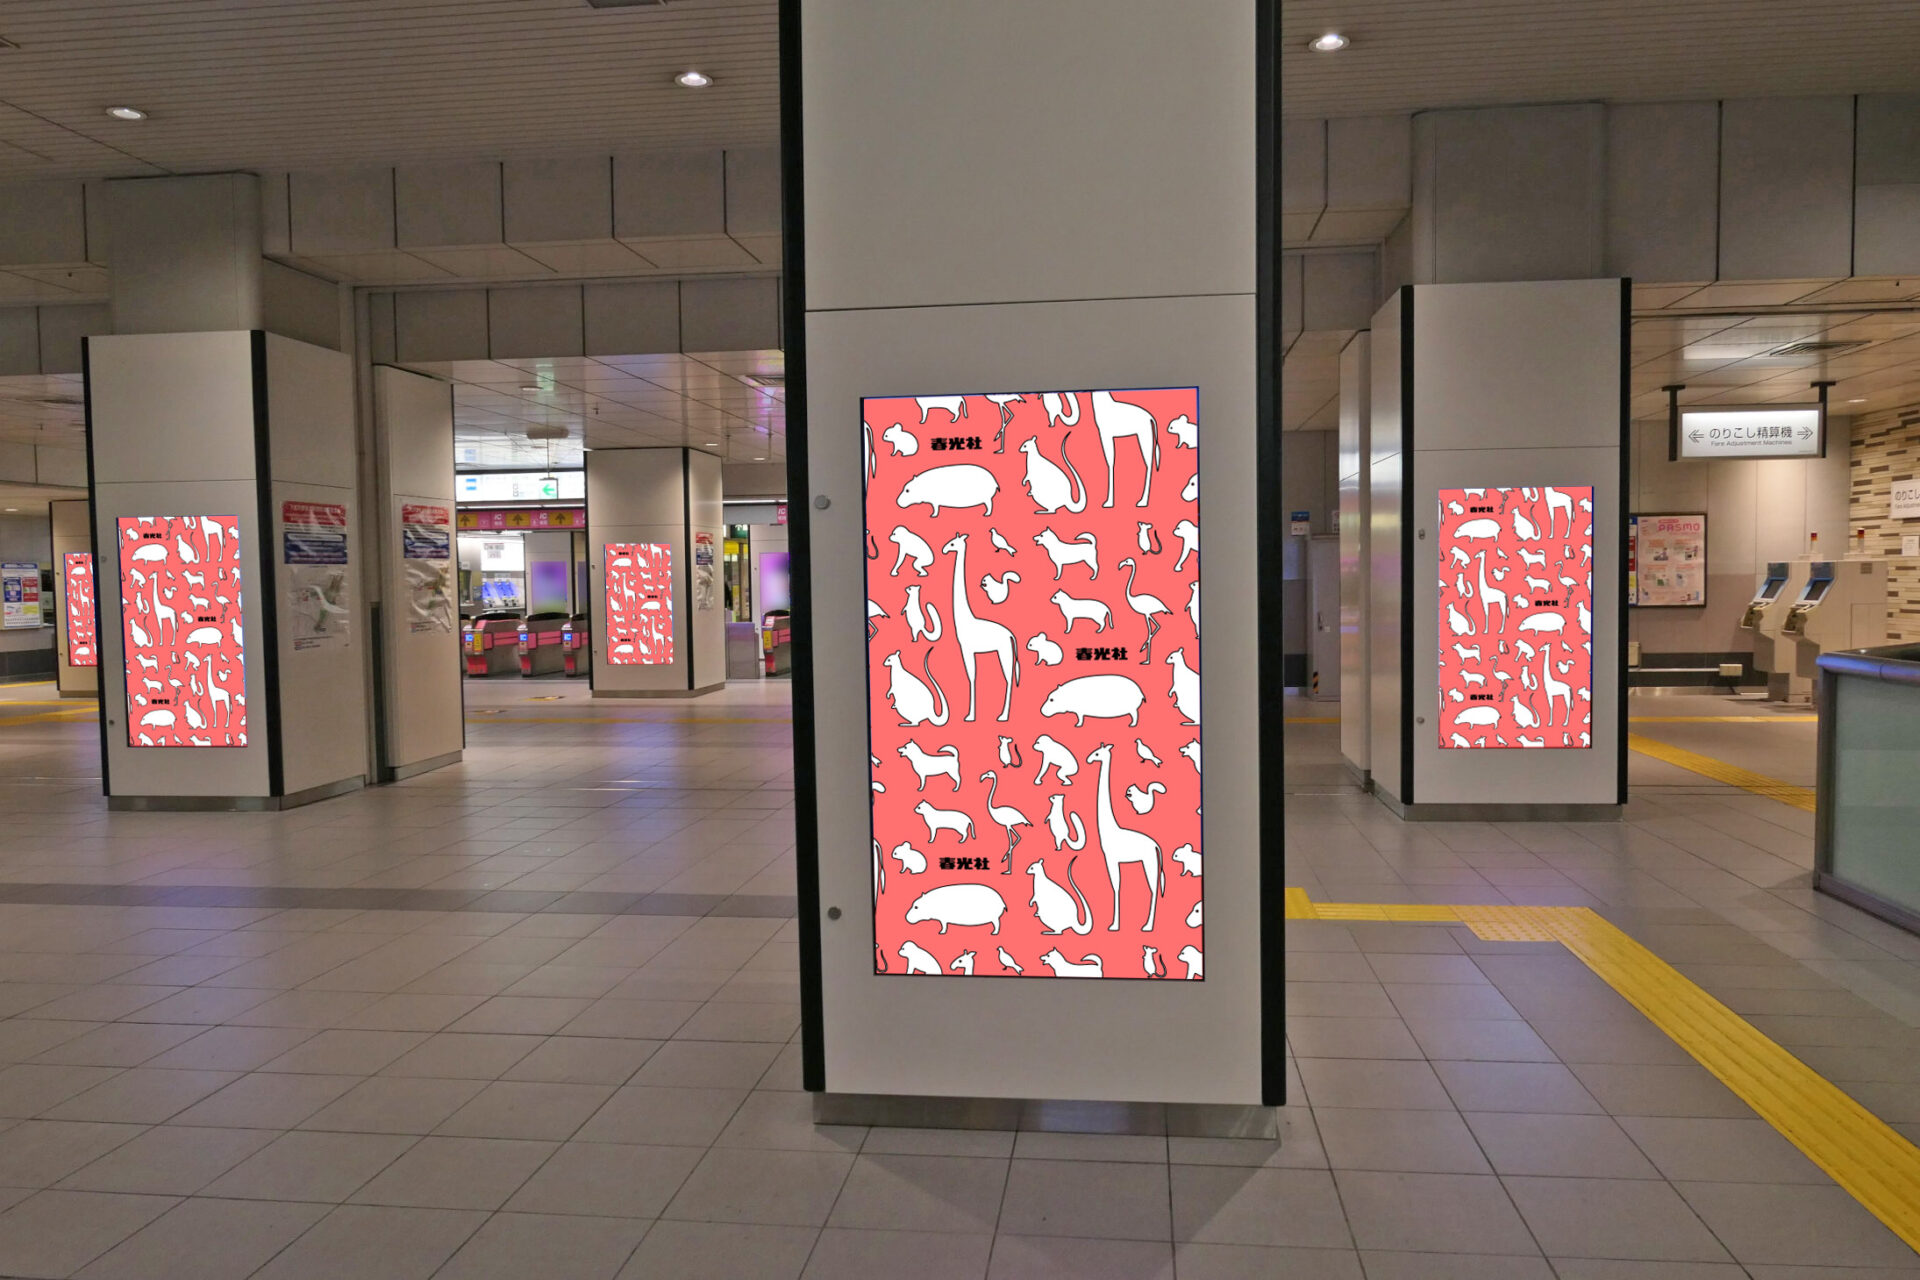 京王井の頭線渋谷駅改札内に設置されている縦型デジタルサイネージ